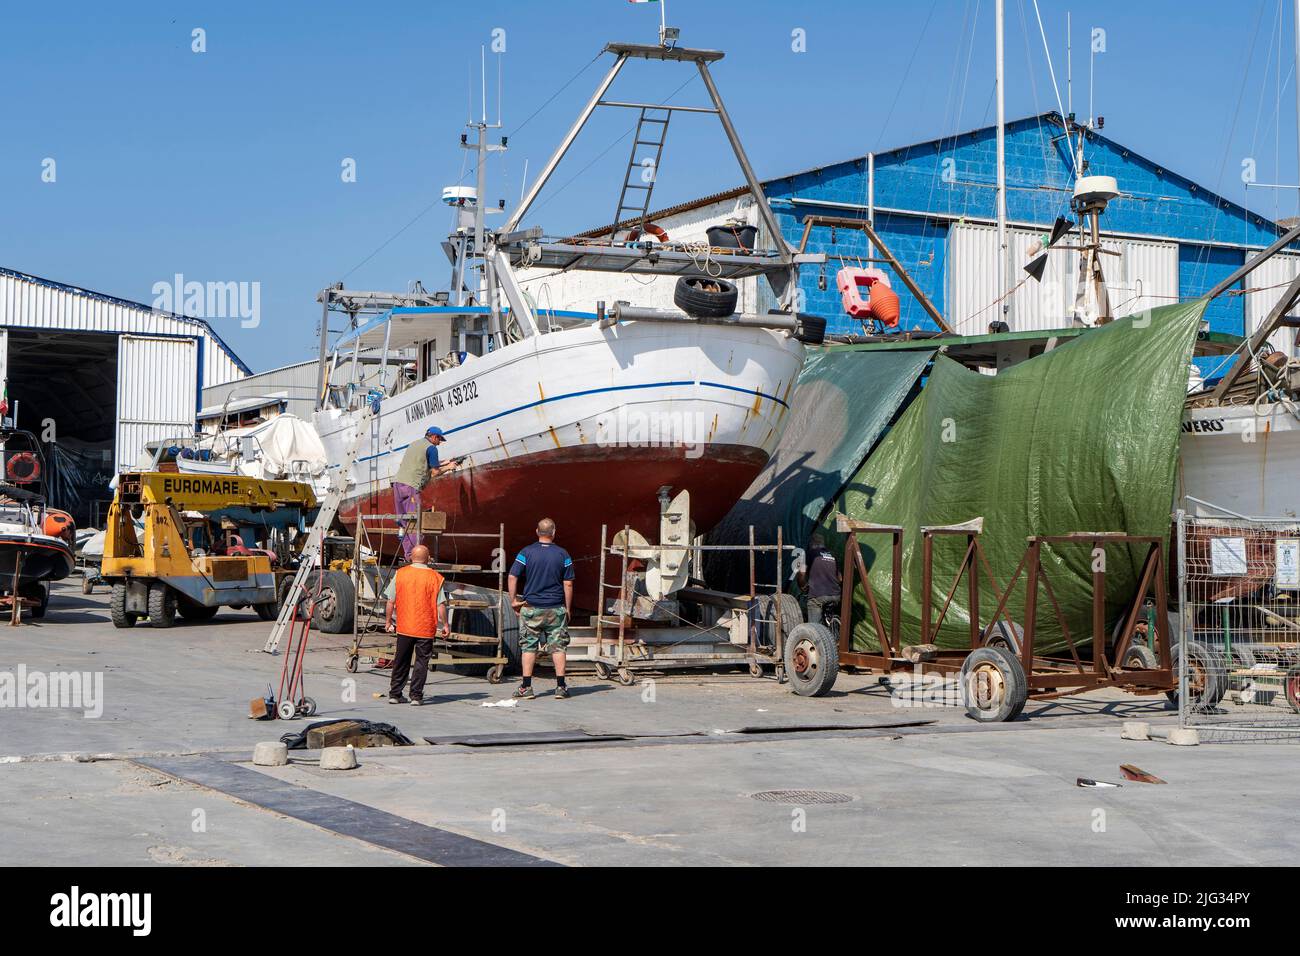 Port of Civitanova Marche, shipyard, South Pier, Marche, Italy, Europe Stock Photo